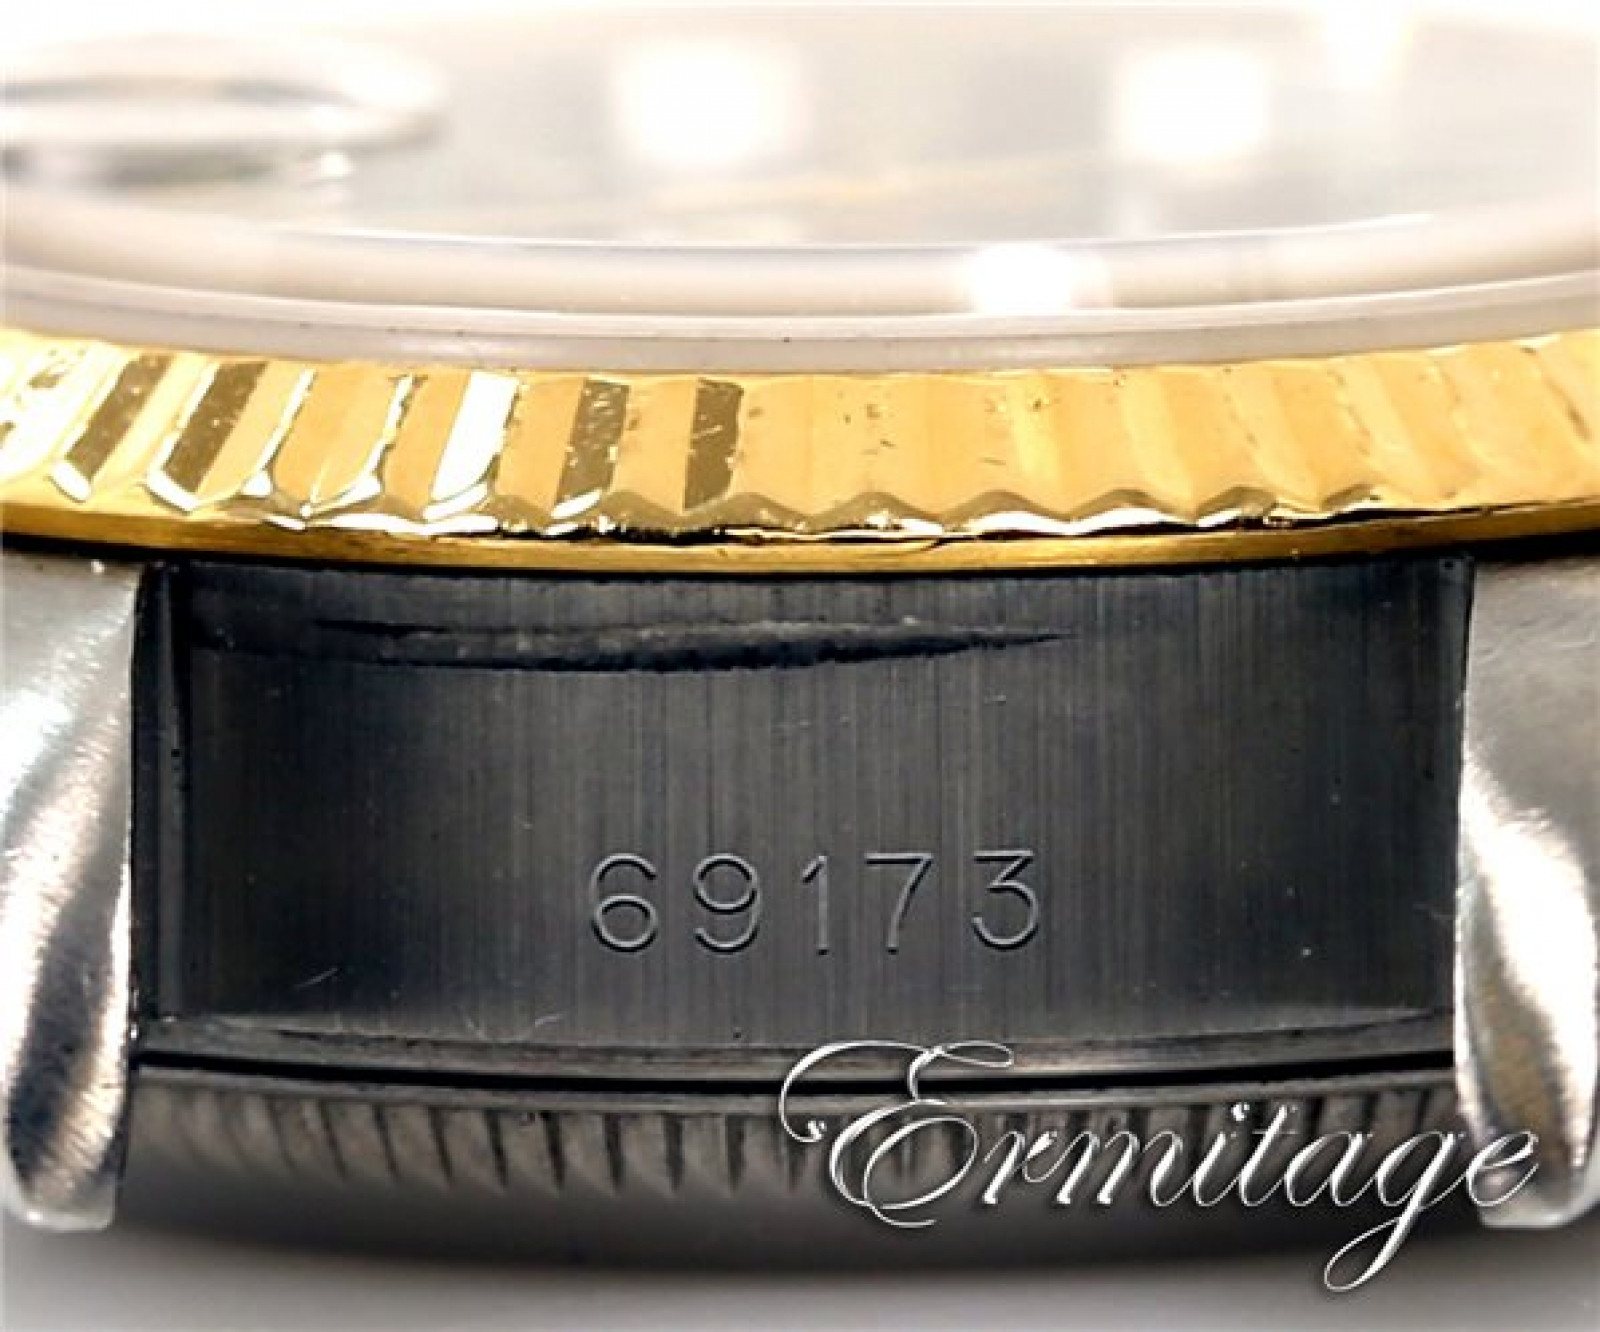 Ladies Rolex Datejust 69173 Gold & Steel